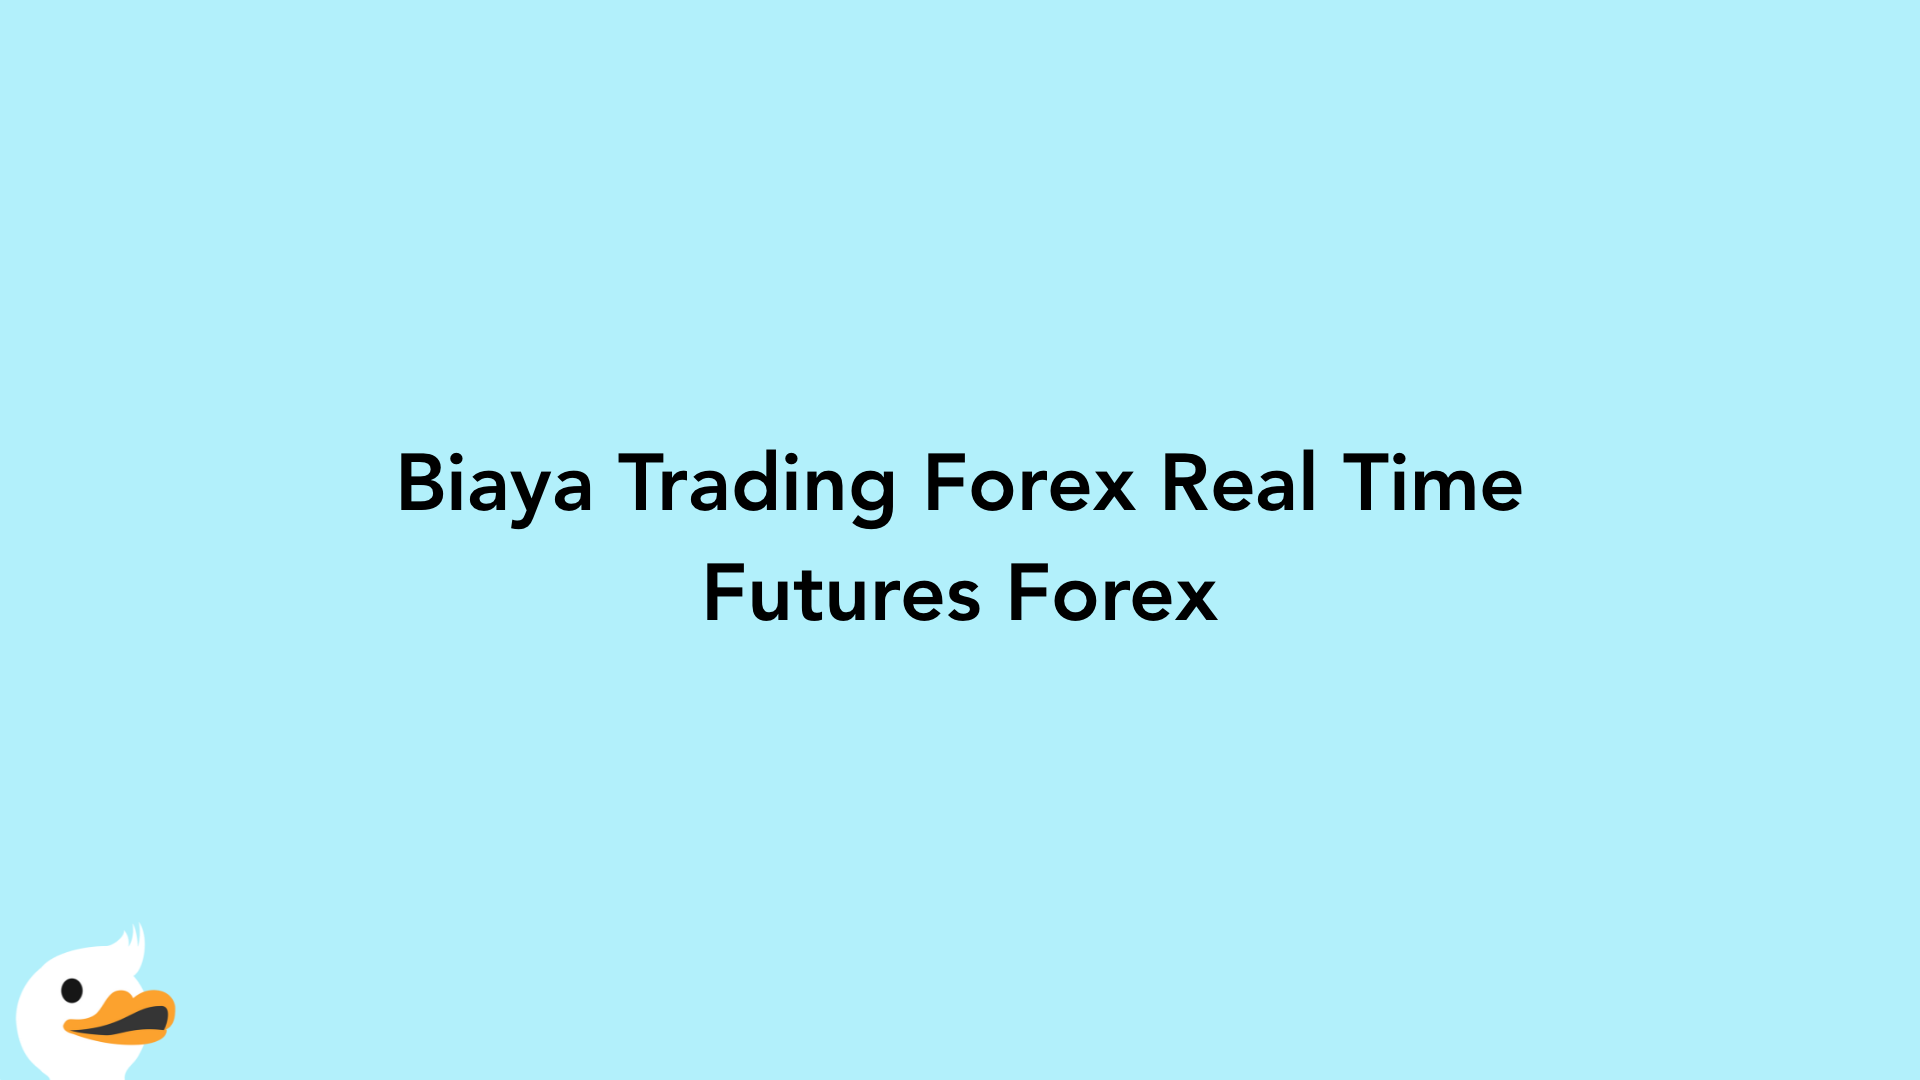 Biaya Trading Forex Real Time Futures Forex